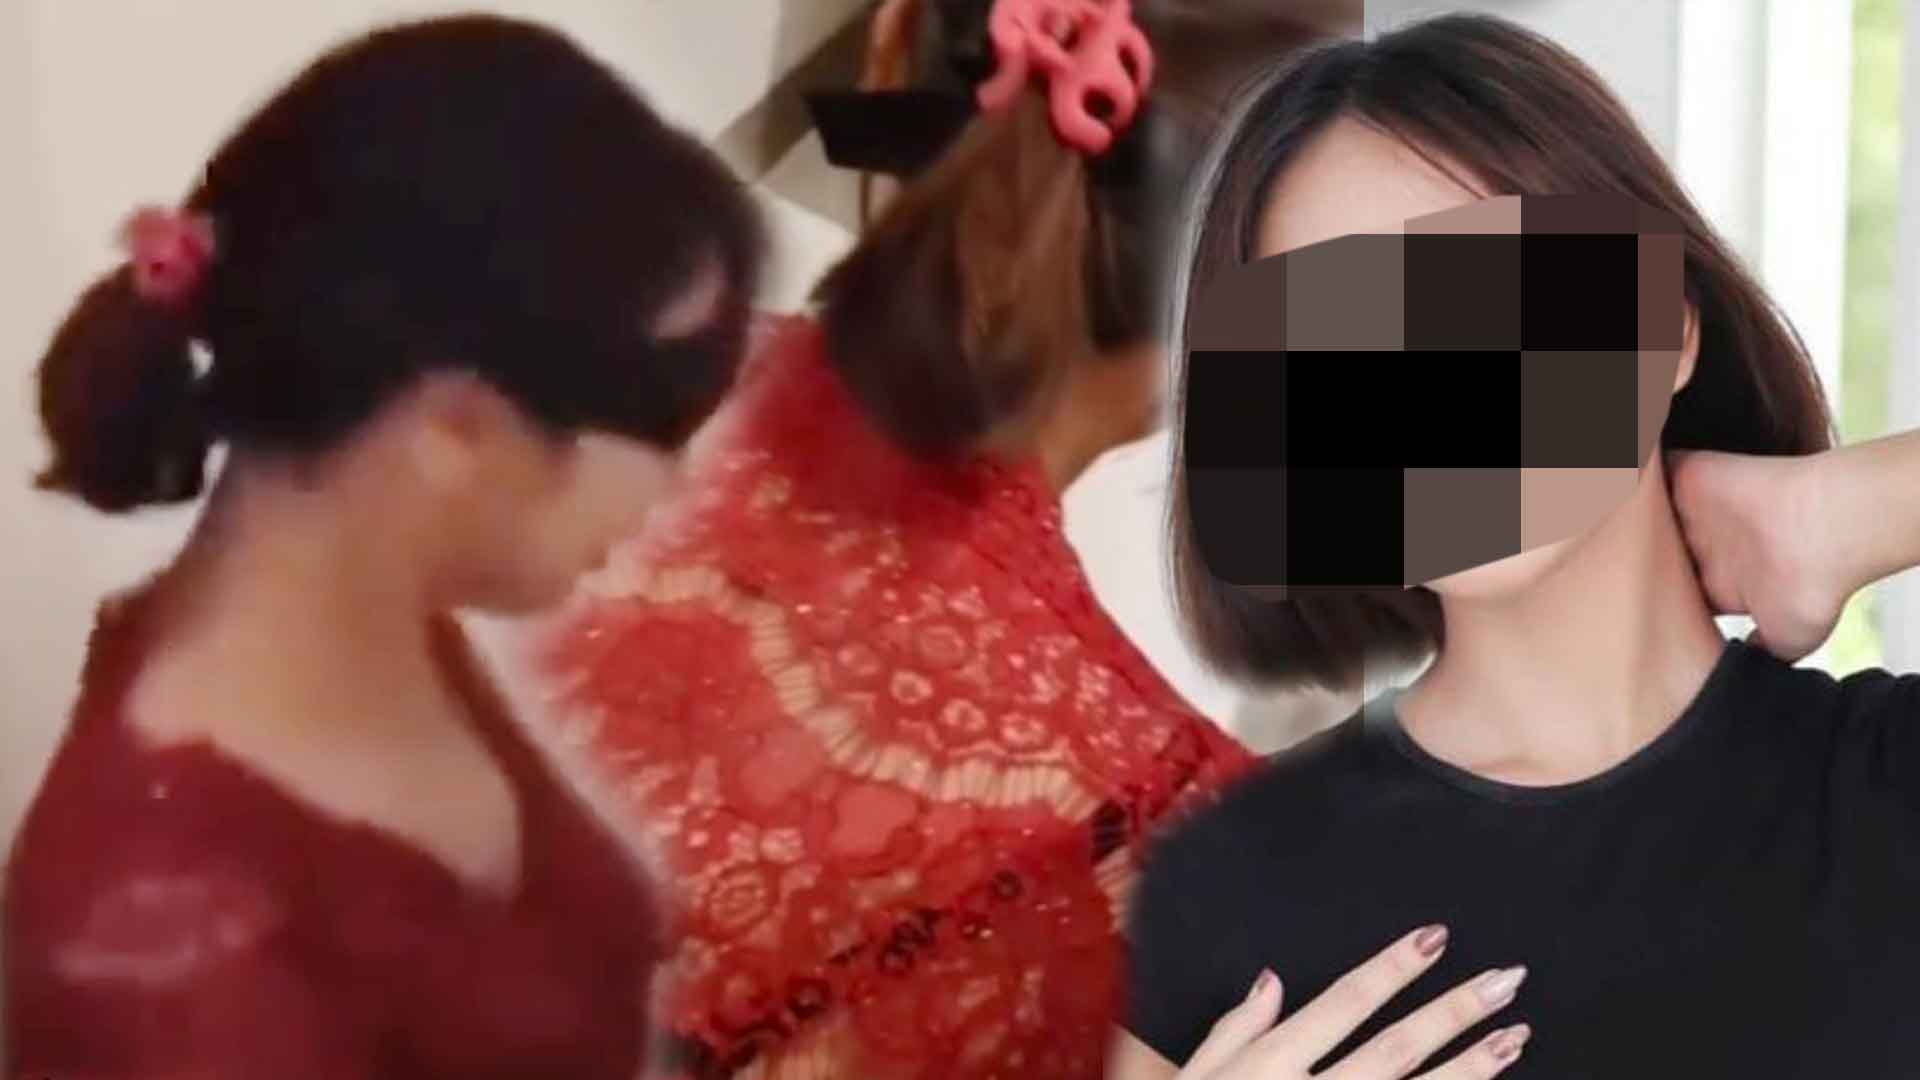 Donlot Sex Orang Pegunungan - Video Porno Kebaya Merah Diproduksi Maret 2022, Bocor dan Viral November